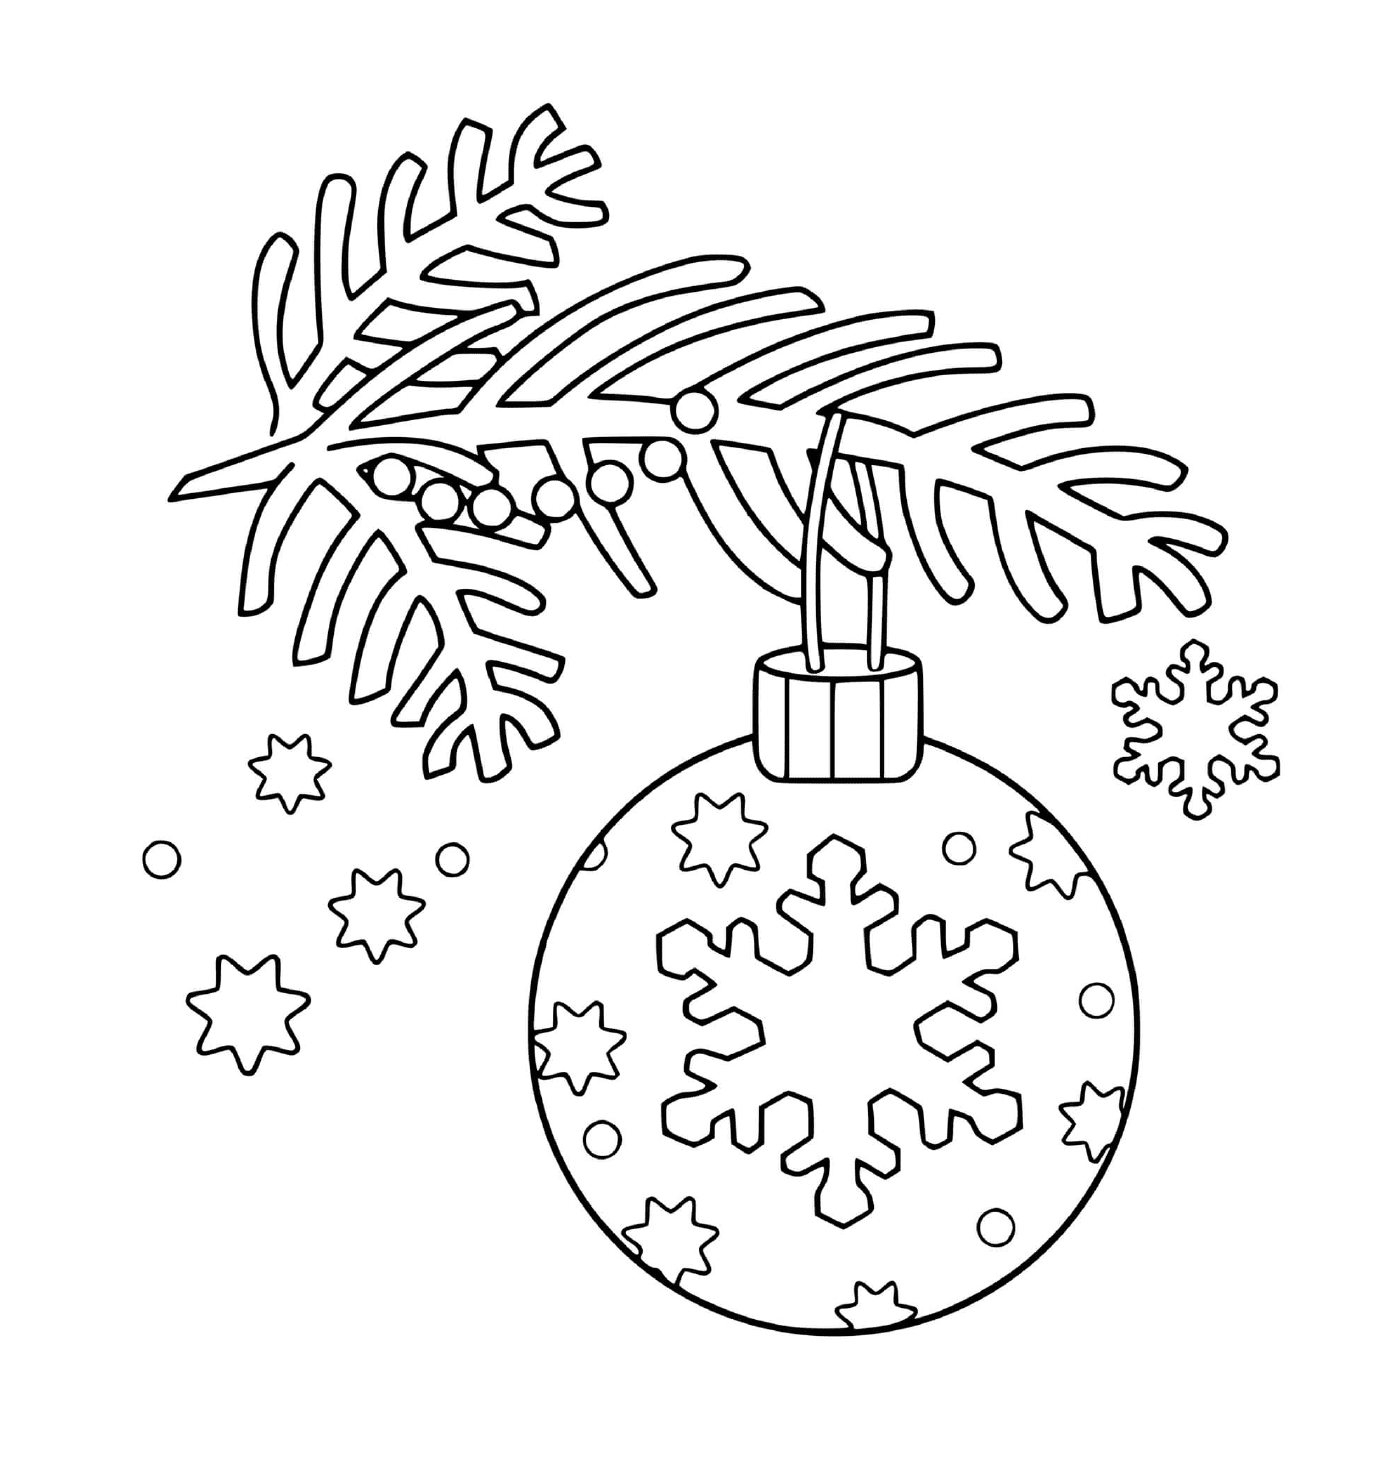  A Christmas ball hanging on a tree 